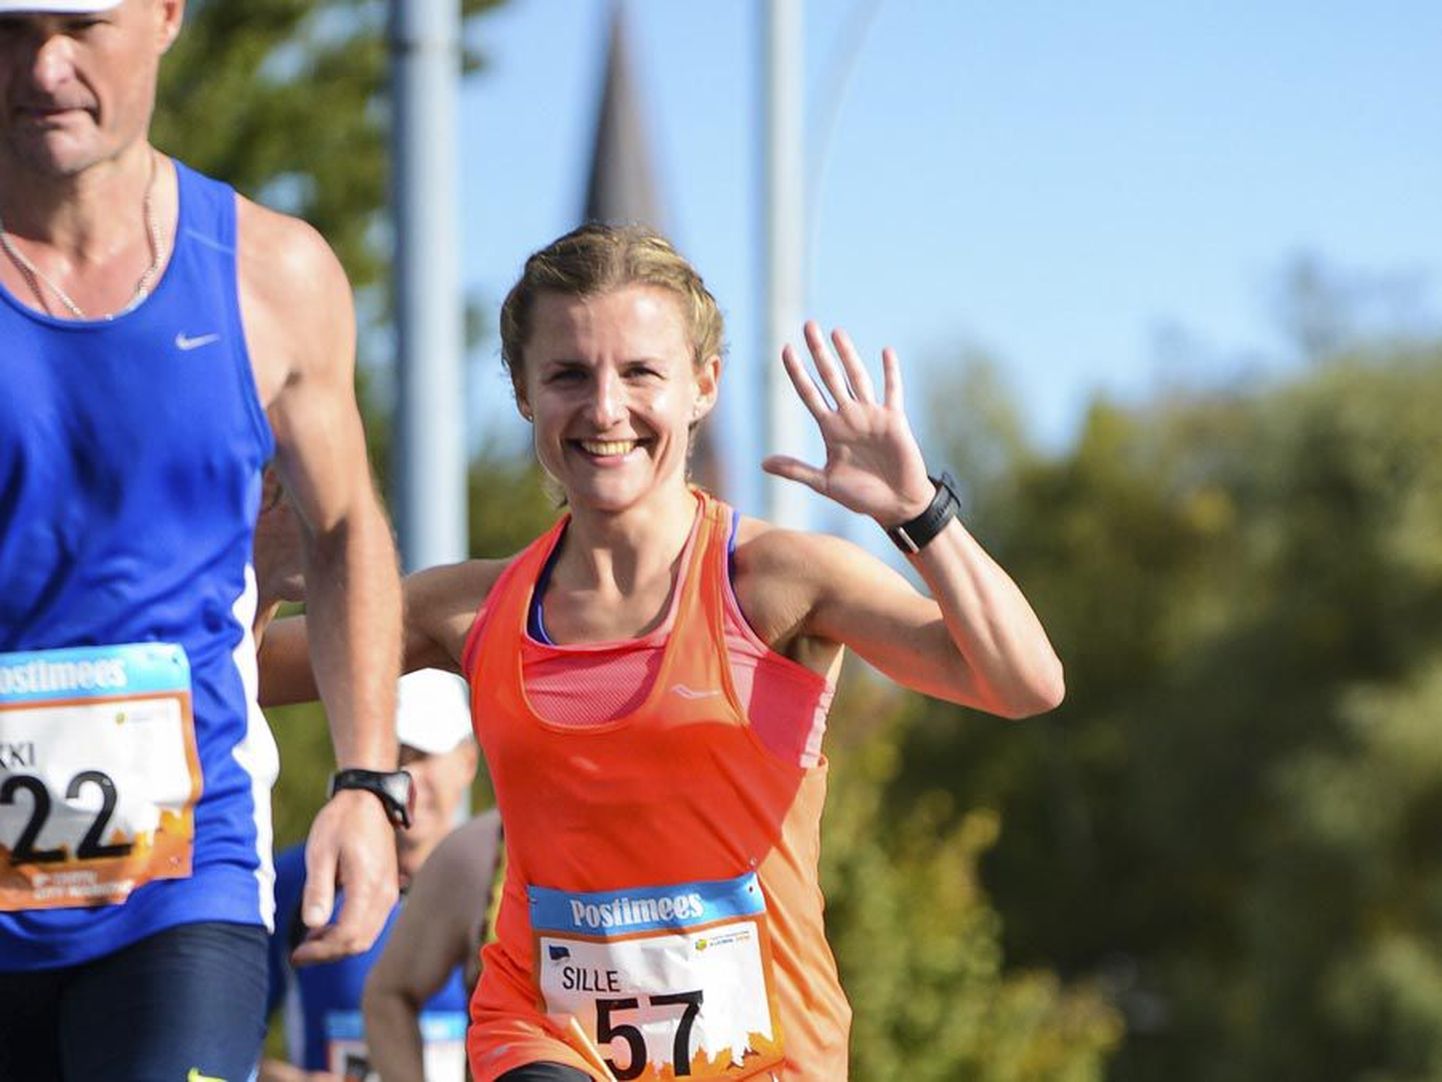 Sille Puhu lõpetas laupäeval Tartu linnamaratoni naiste konkurentsis kolmanda kohaga ja tagas sellega endale Tartu maratonisarja üldvõidu.